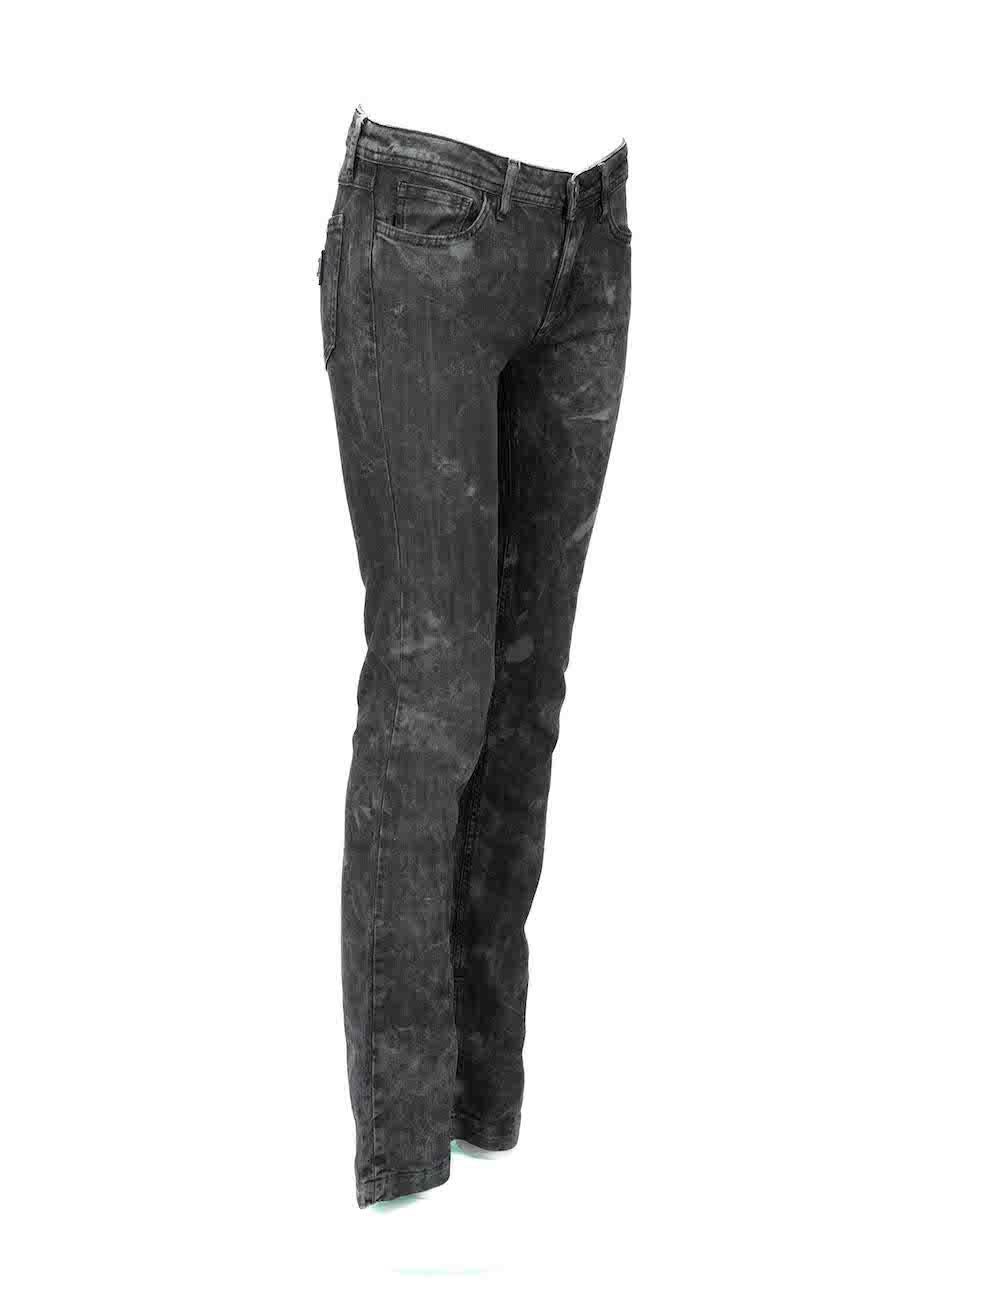 CONDIT ist sehr gut. Kaum sichtbare Abnutzungserscheinungen an der Jeans sind an diesem gebrauchten Dolce & Gabbana Designer-Wiederverkaufsartikel zu erkennen. Bitte beachten Sie, dass das Anlaufen der Metallplatte auf der rechten hinteren Tasche